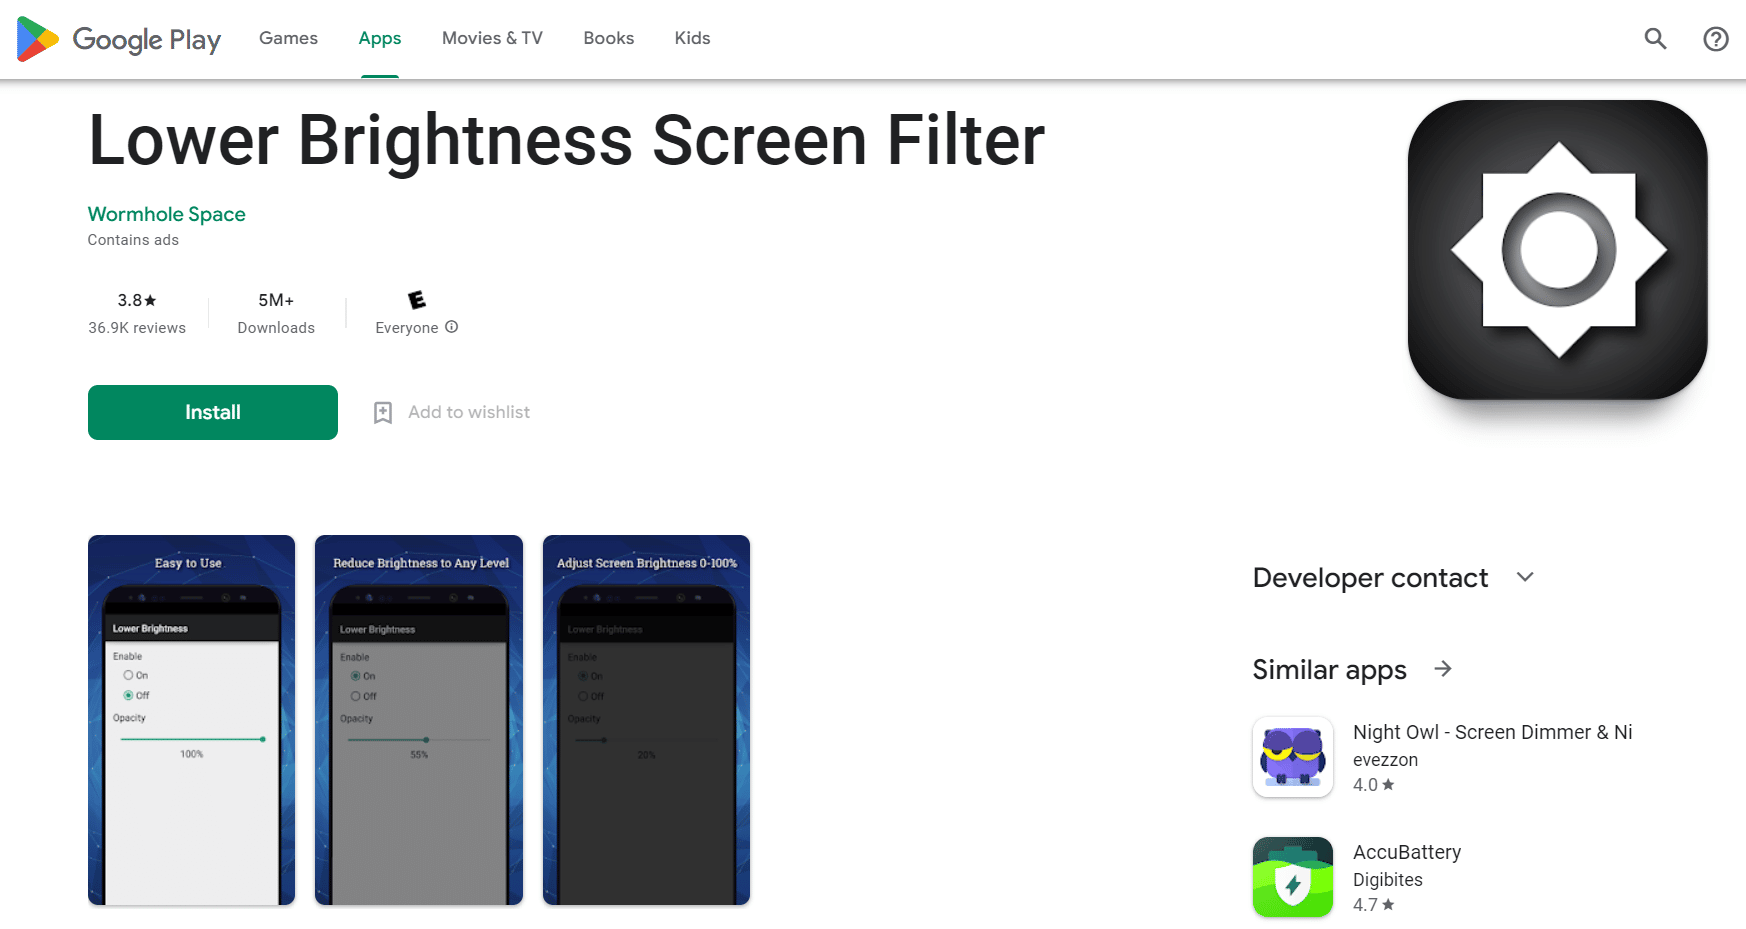 Filtru de ecran cu luminozitate redusă | aplicație pentru ecran mai luminos pentru reducerea luminozității ecranului